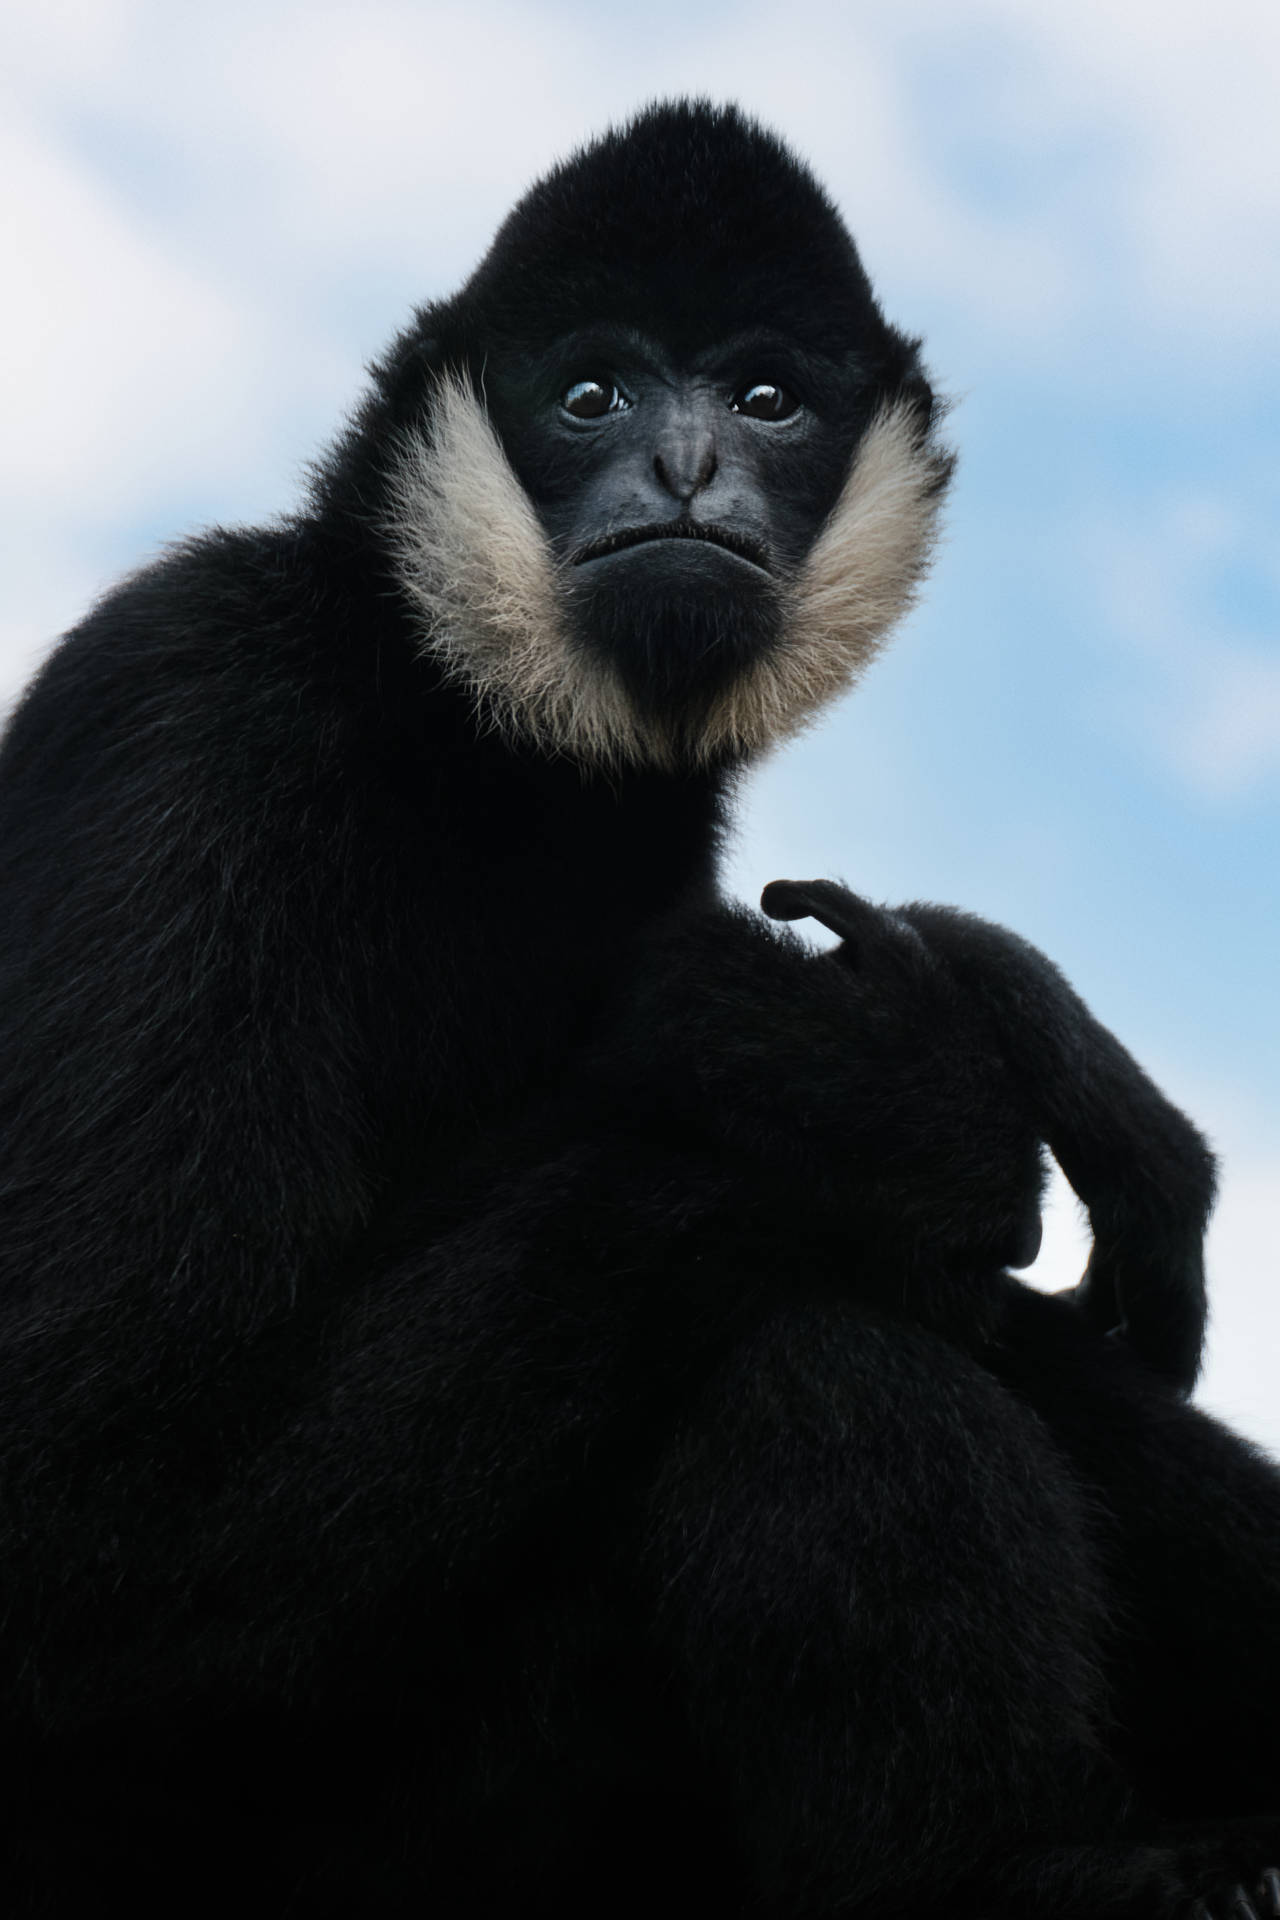 Intimidating Black Gibbon